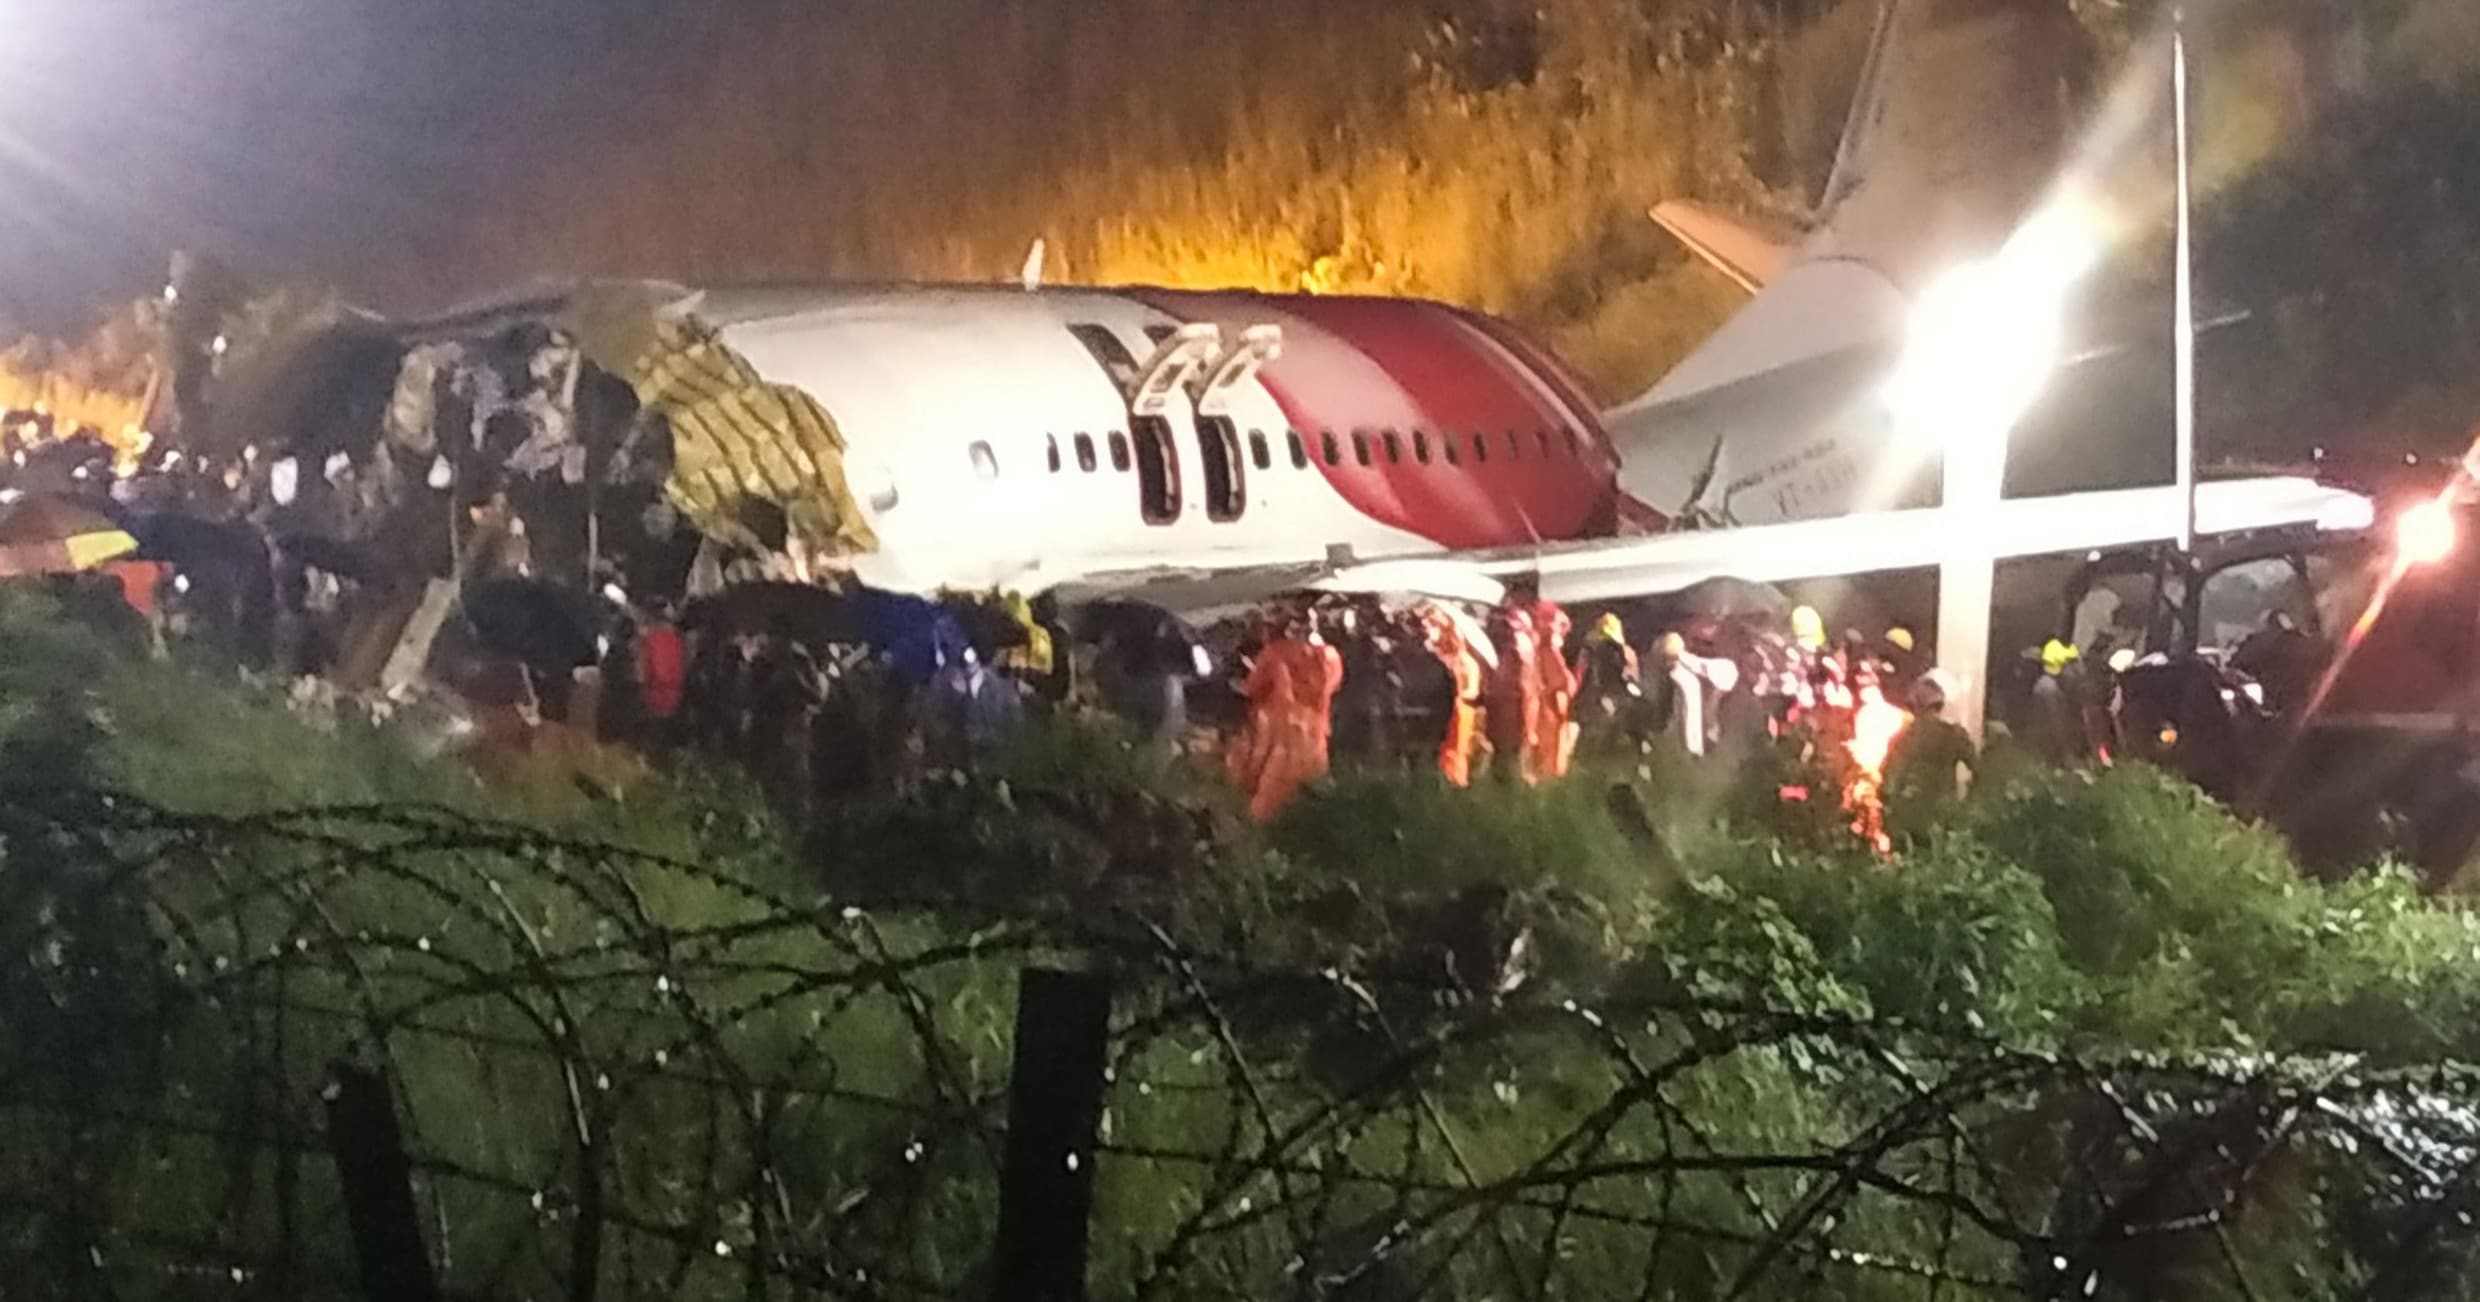 Vliegtuig Air India glijdt van landingsbaan en breekt in stukken: 16 doden